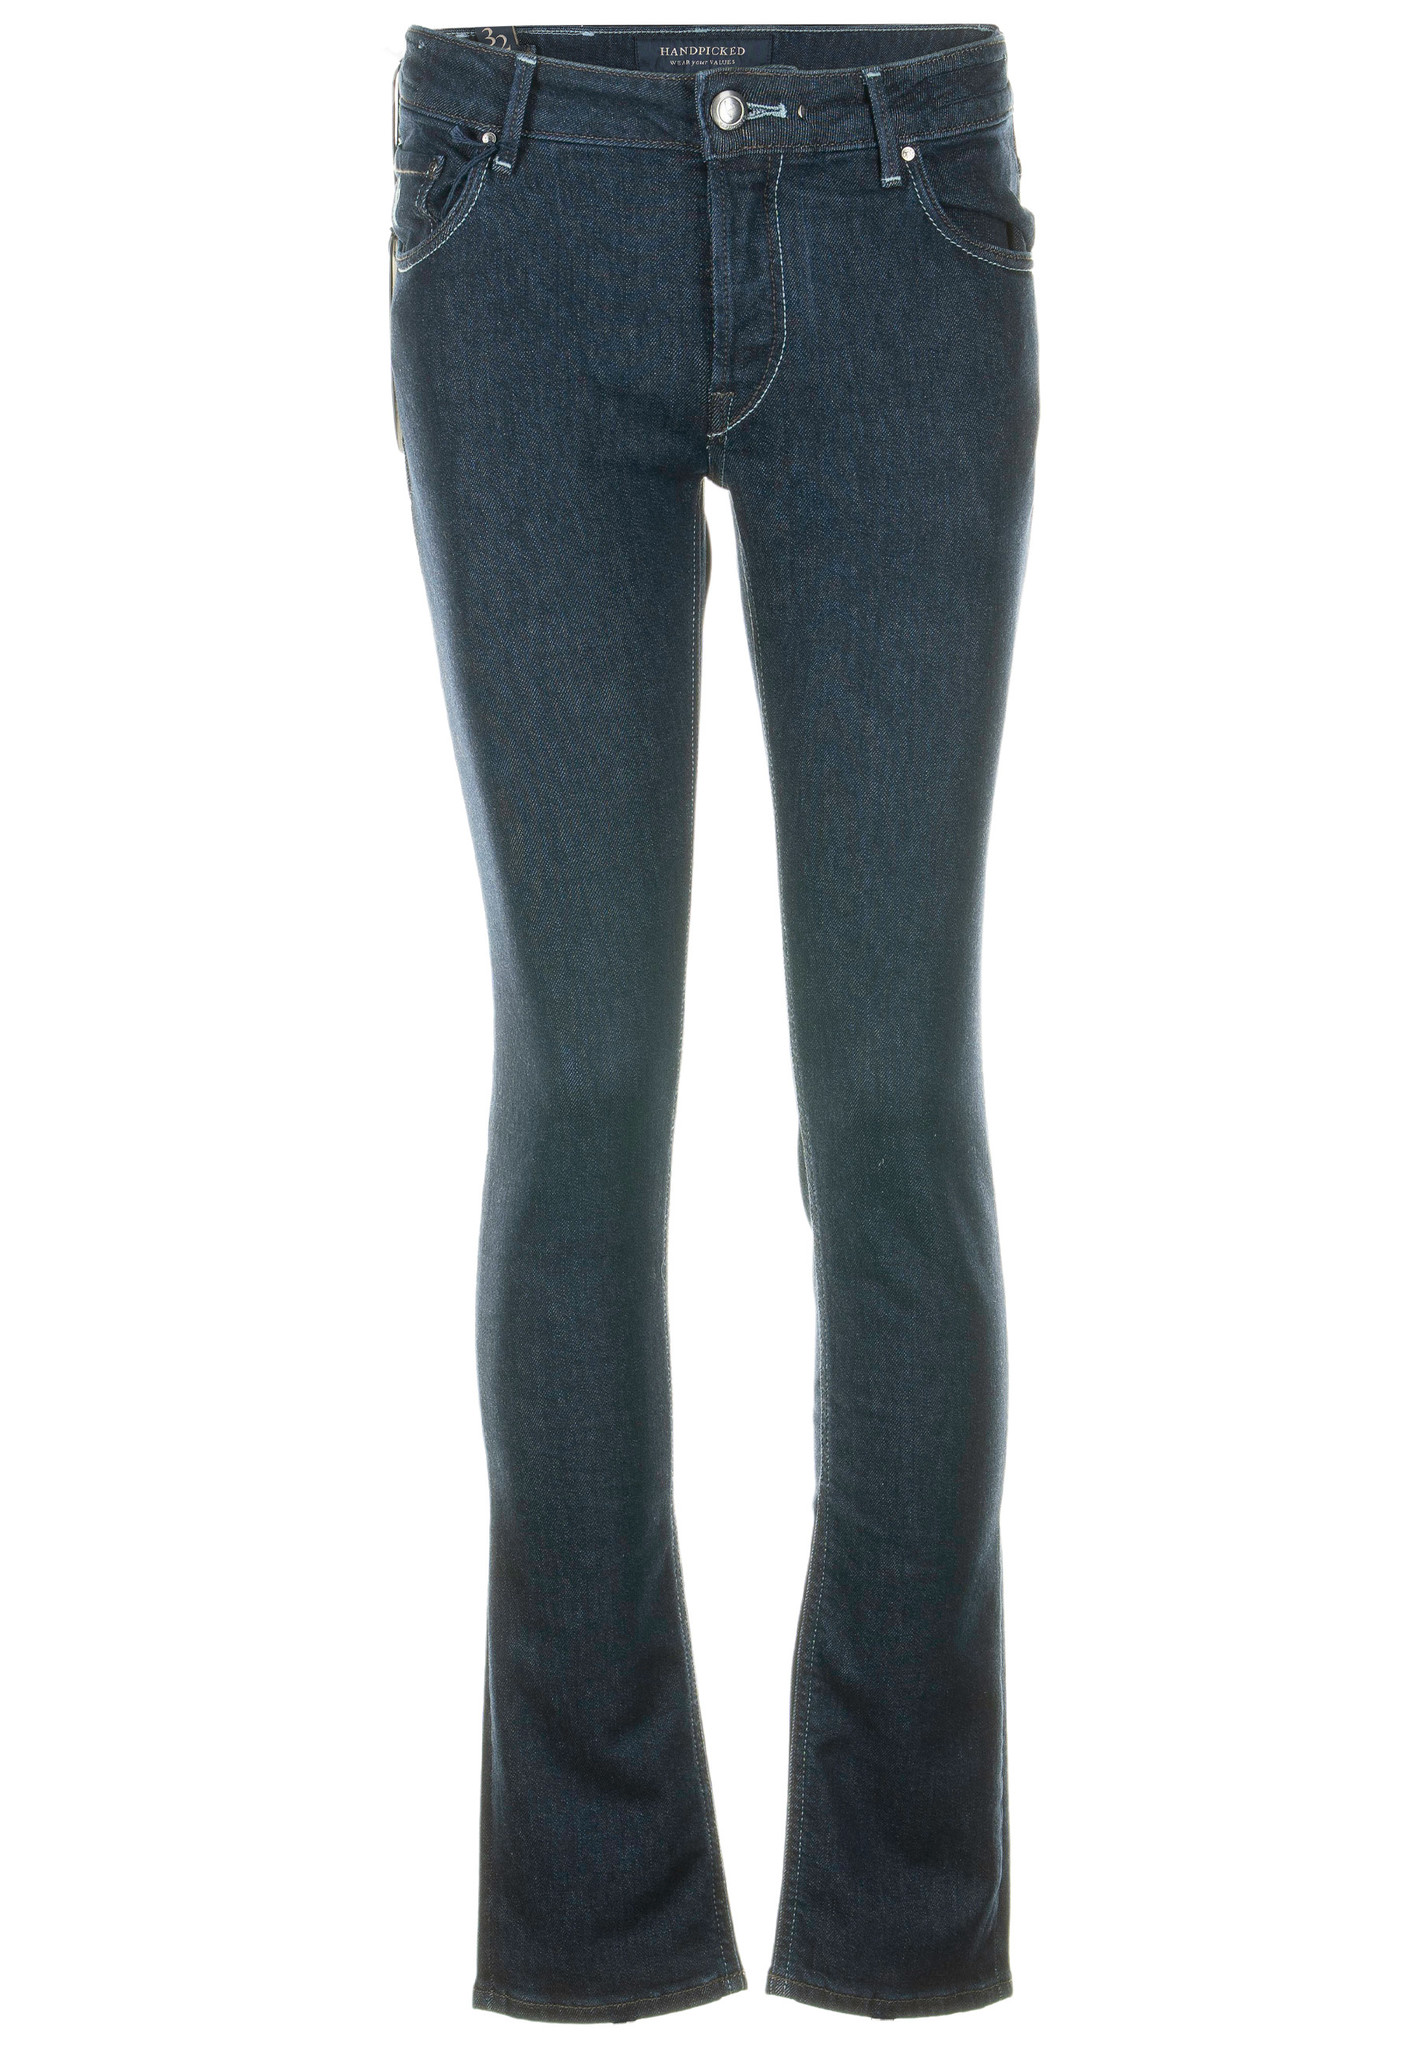 Afbeelding van Handpicked Orvieto jeans